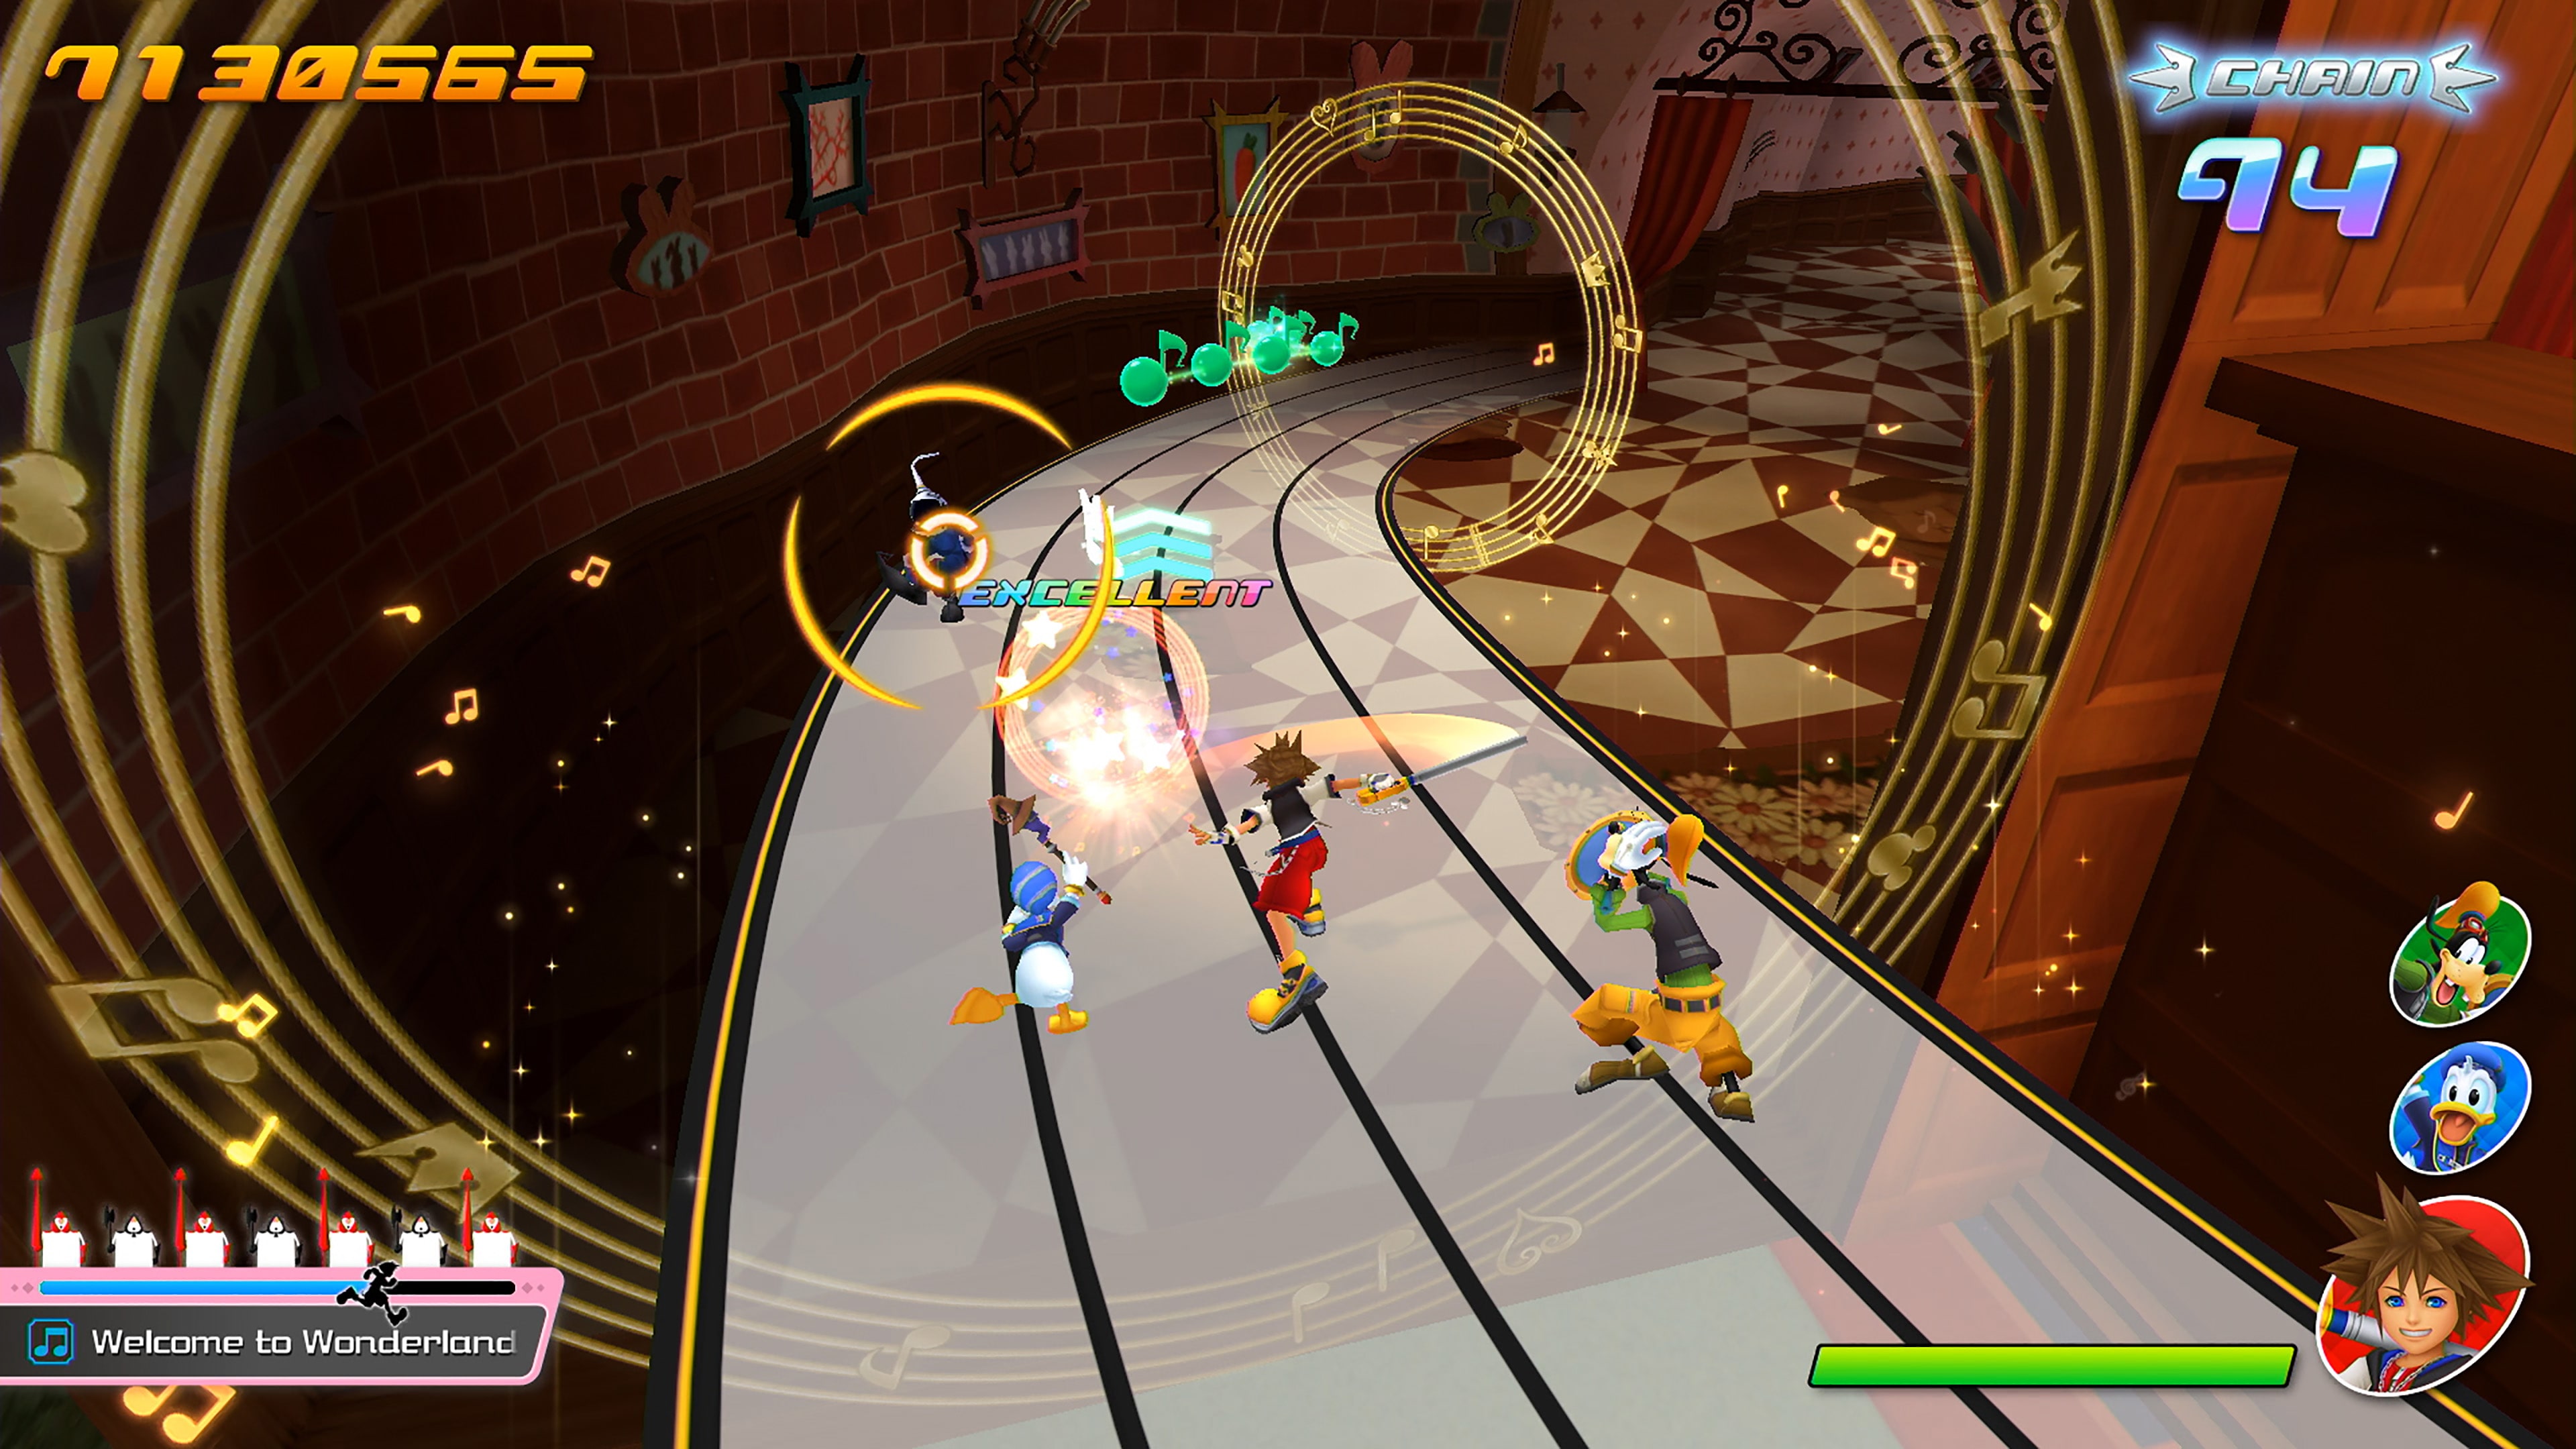 Game Kingdom Hearts: Melody Of Memory - PS4 em Promoção na Americanas